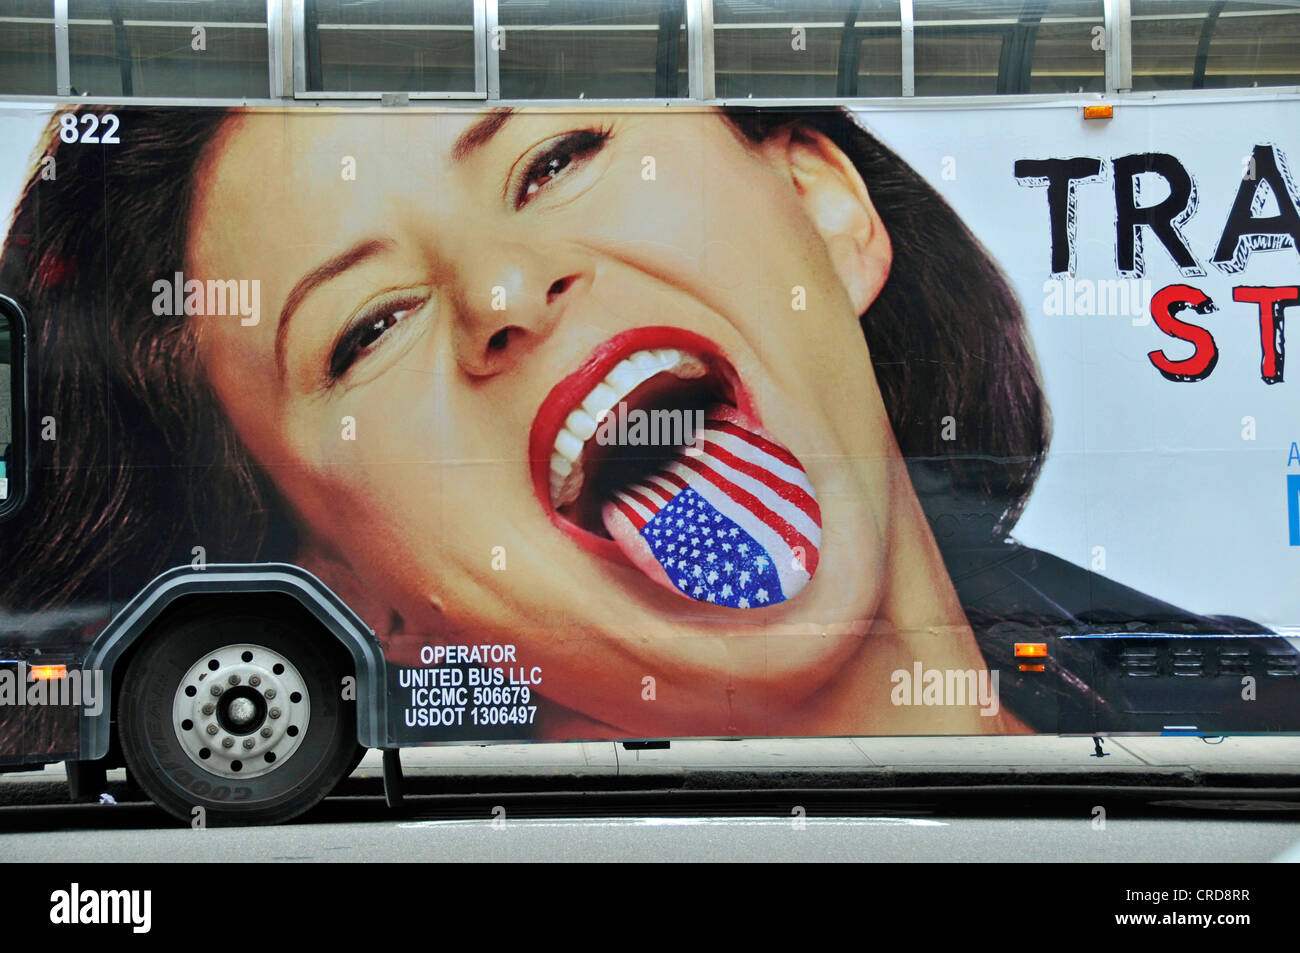 Pubblicità su un bus per la nuova serie di commedia di Tracey Ullman, USA, New York City, Manhattan Foto Stock